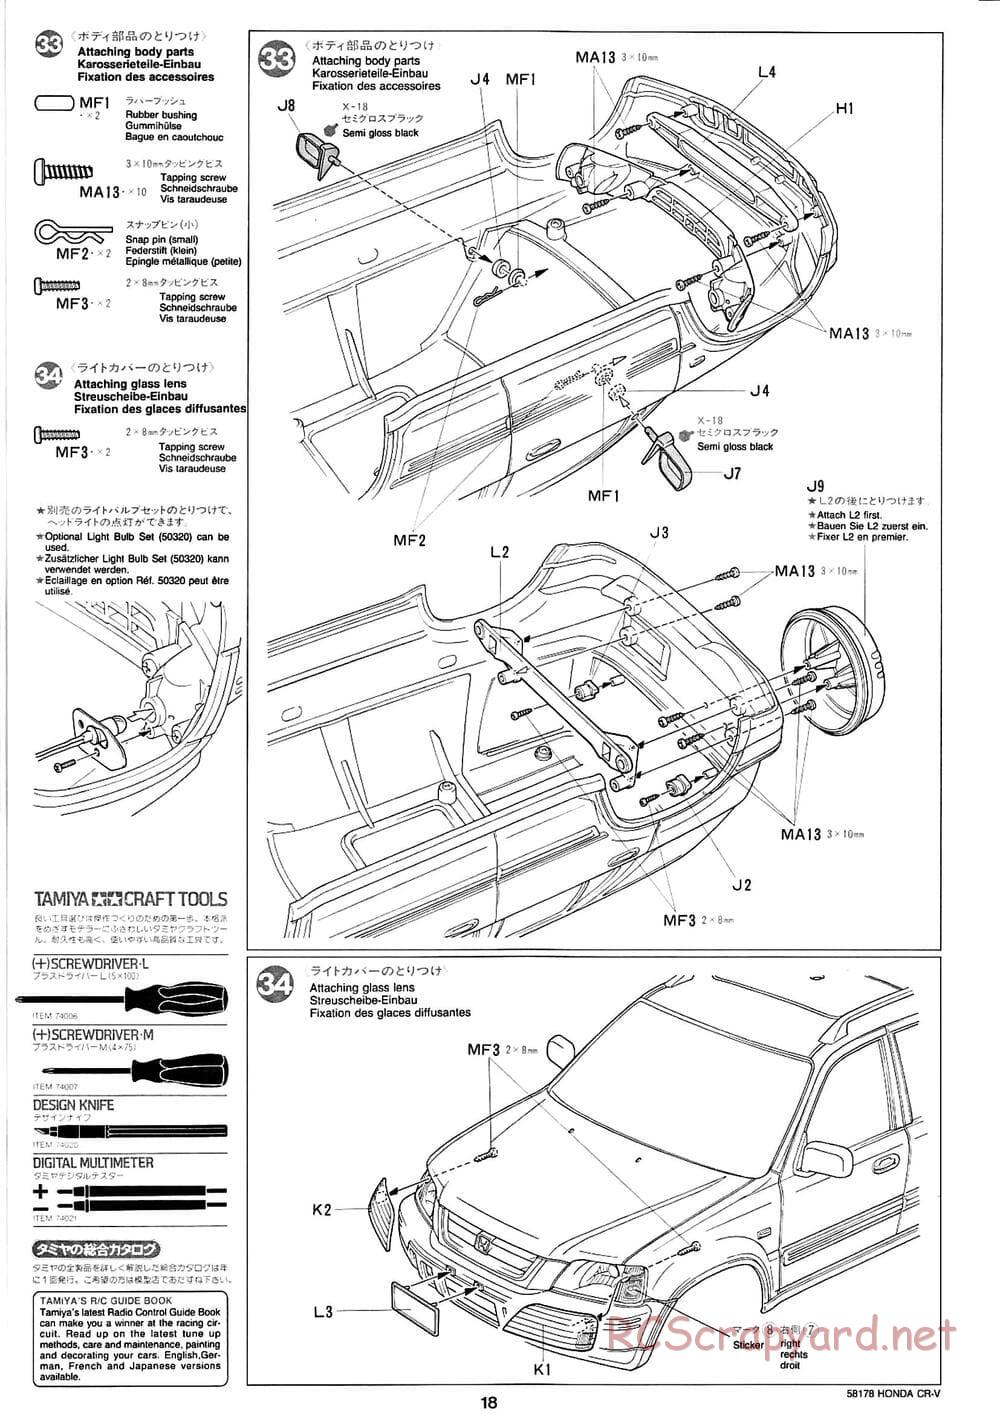 Tamiya - Honda CR-V - CC-01 Chassis - Manual - Page 18